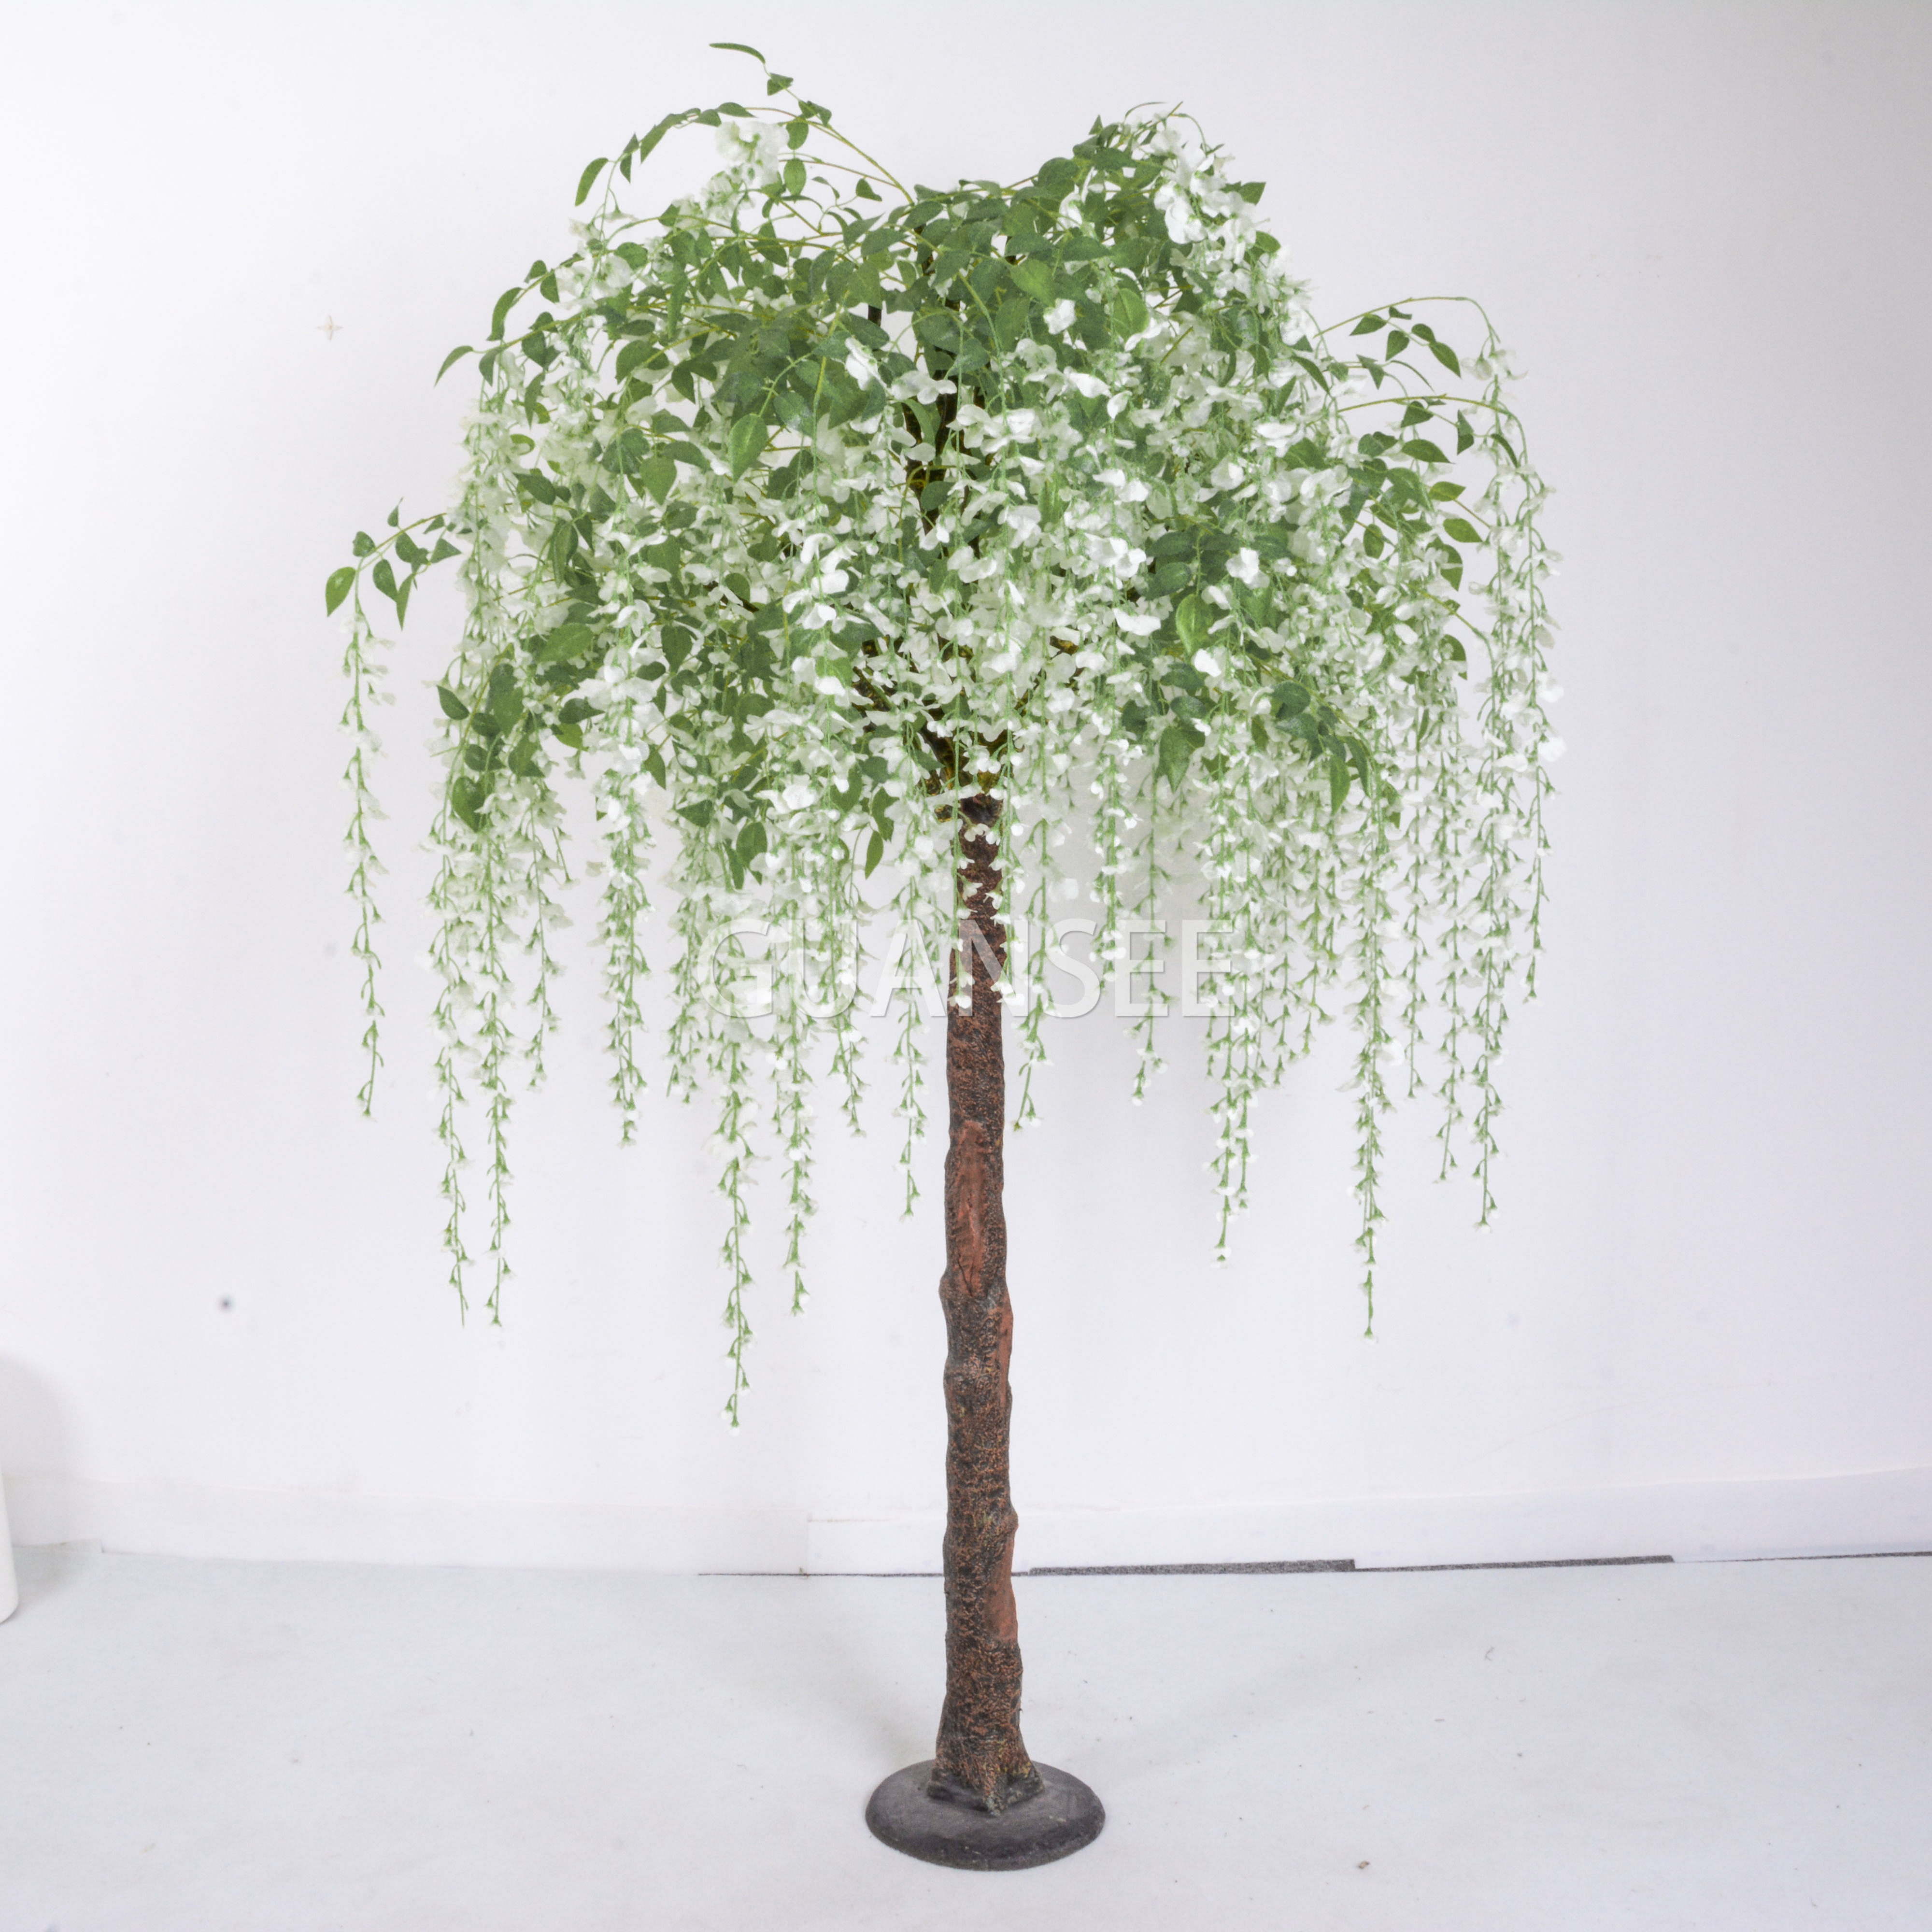 Wit kembang wisteria buatan sing populer kanggo dekorasi